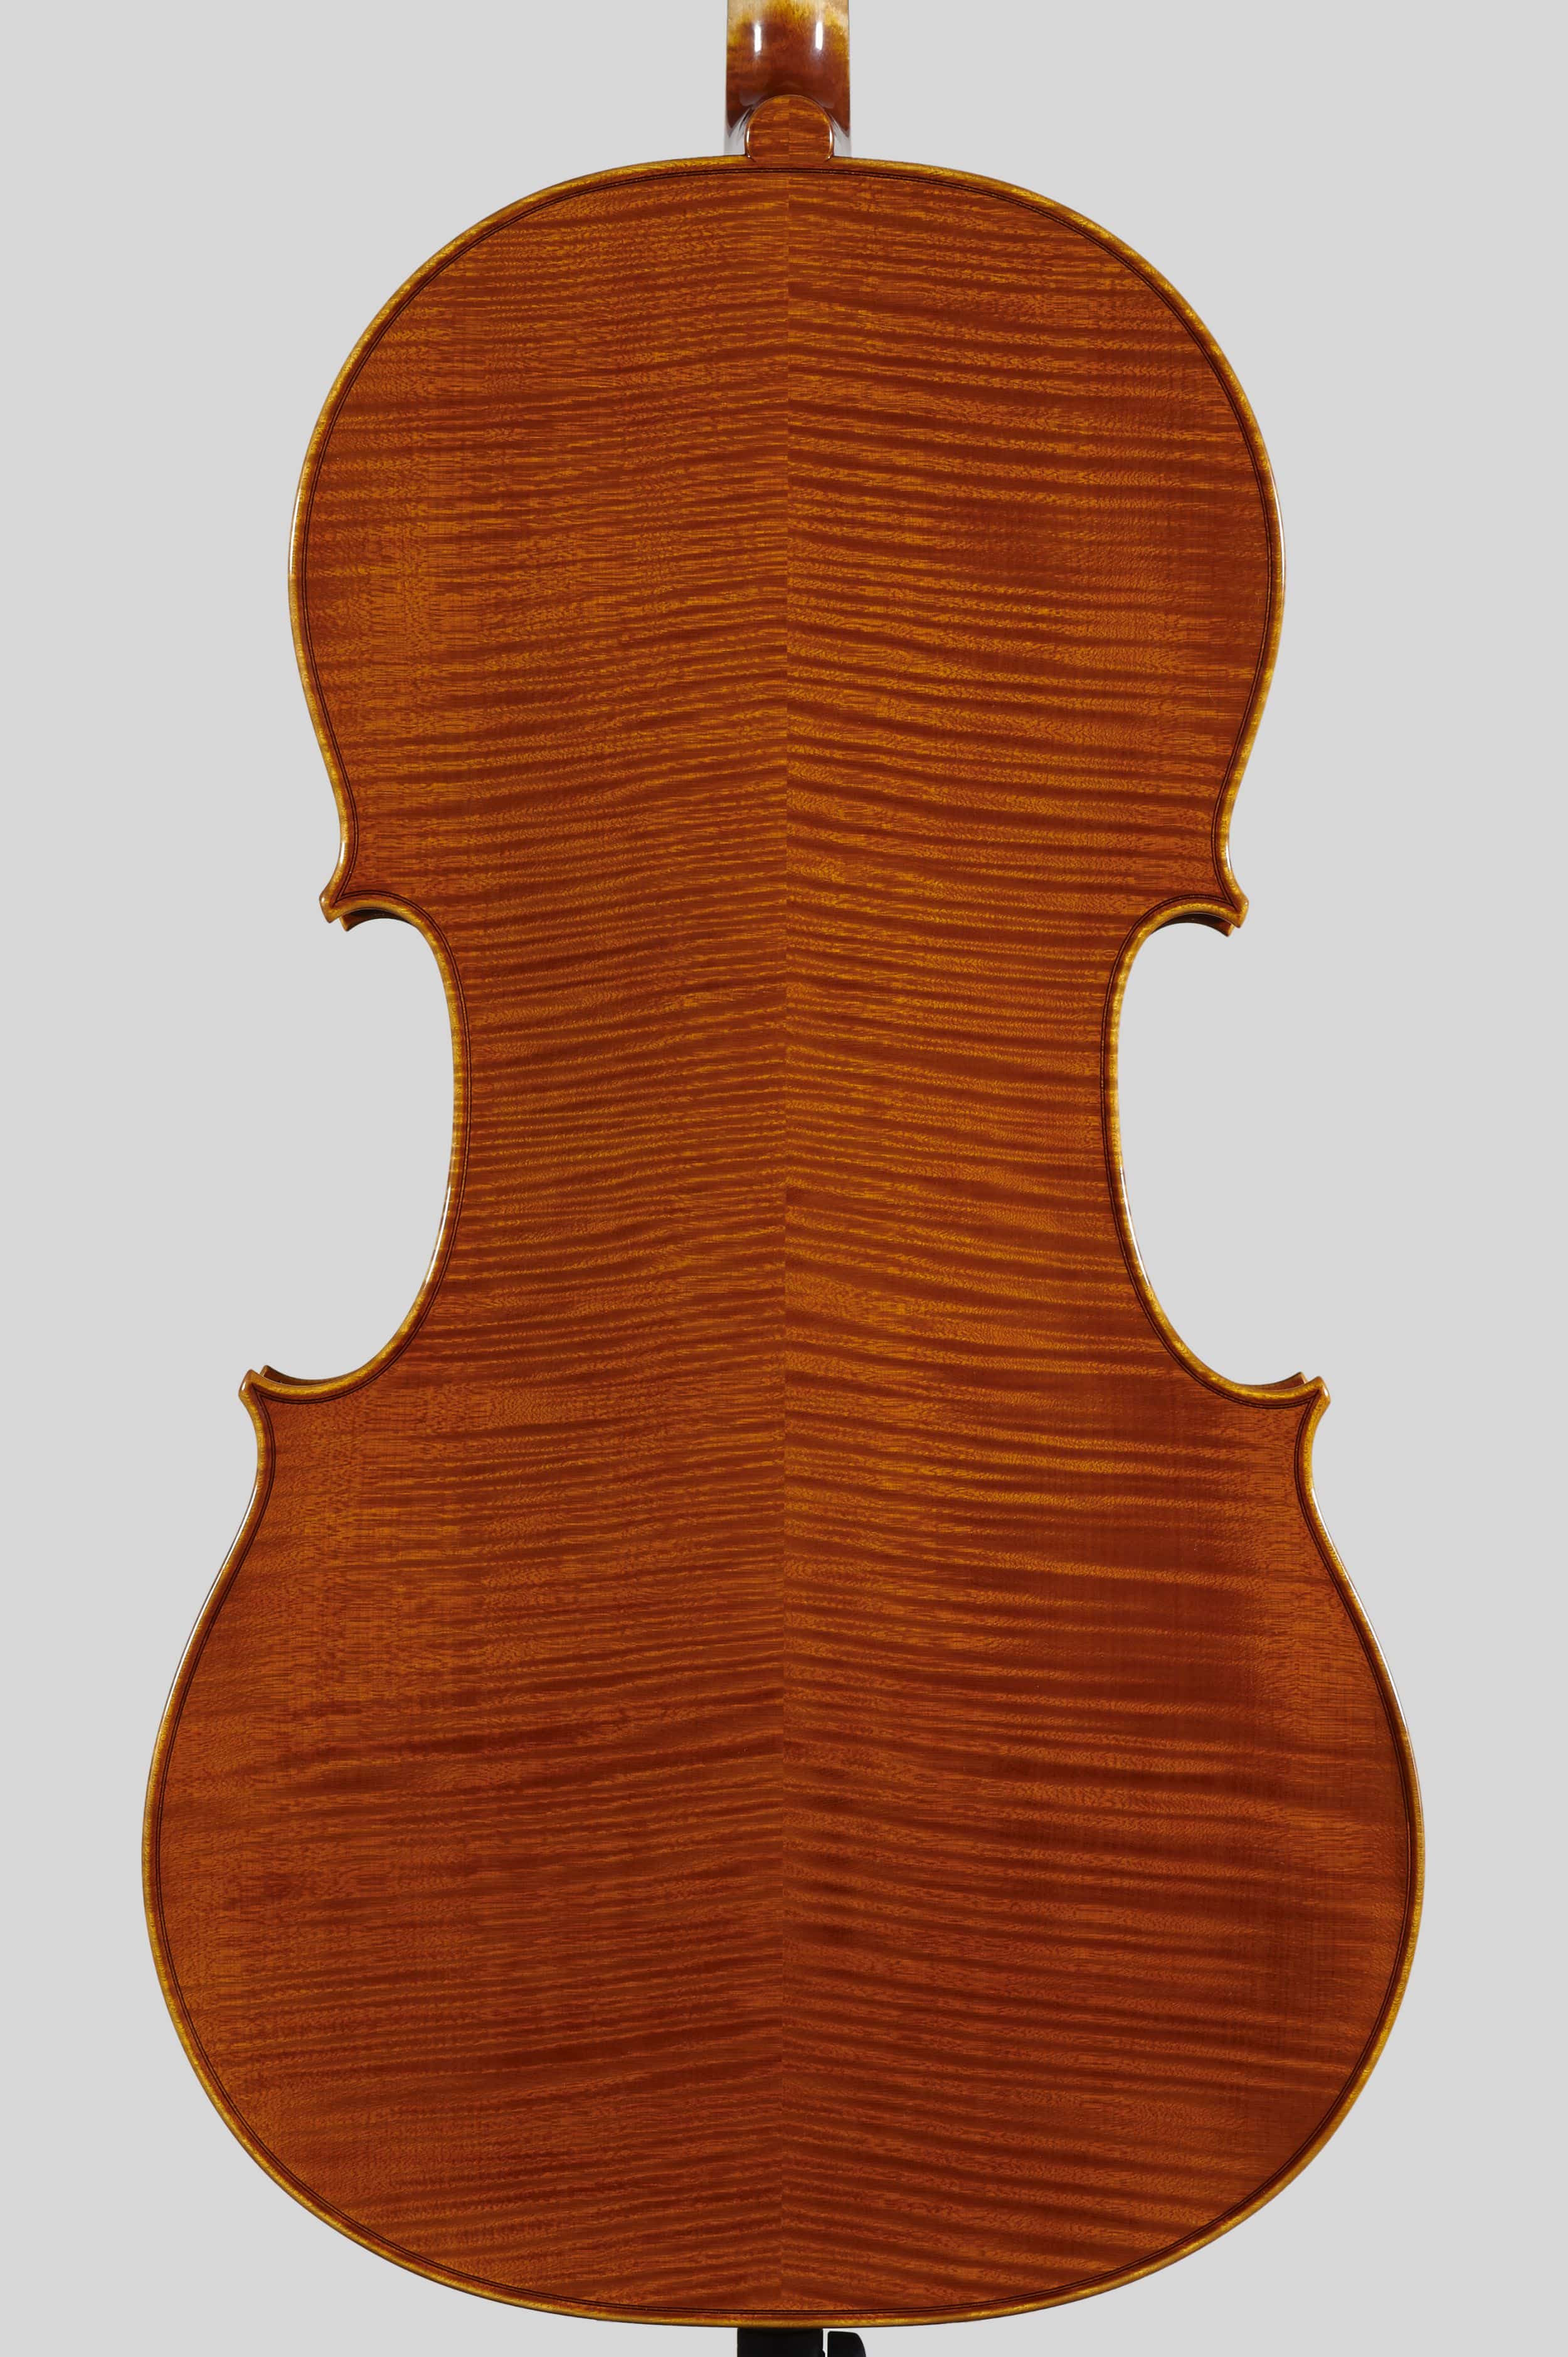 Anno 2012 – Violoncello modello stile A. Stradivari “forma B” - “Mara” 1711 - Fondo